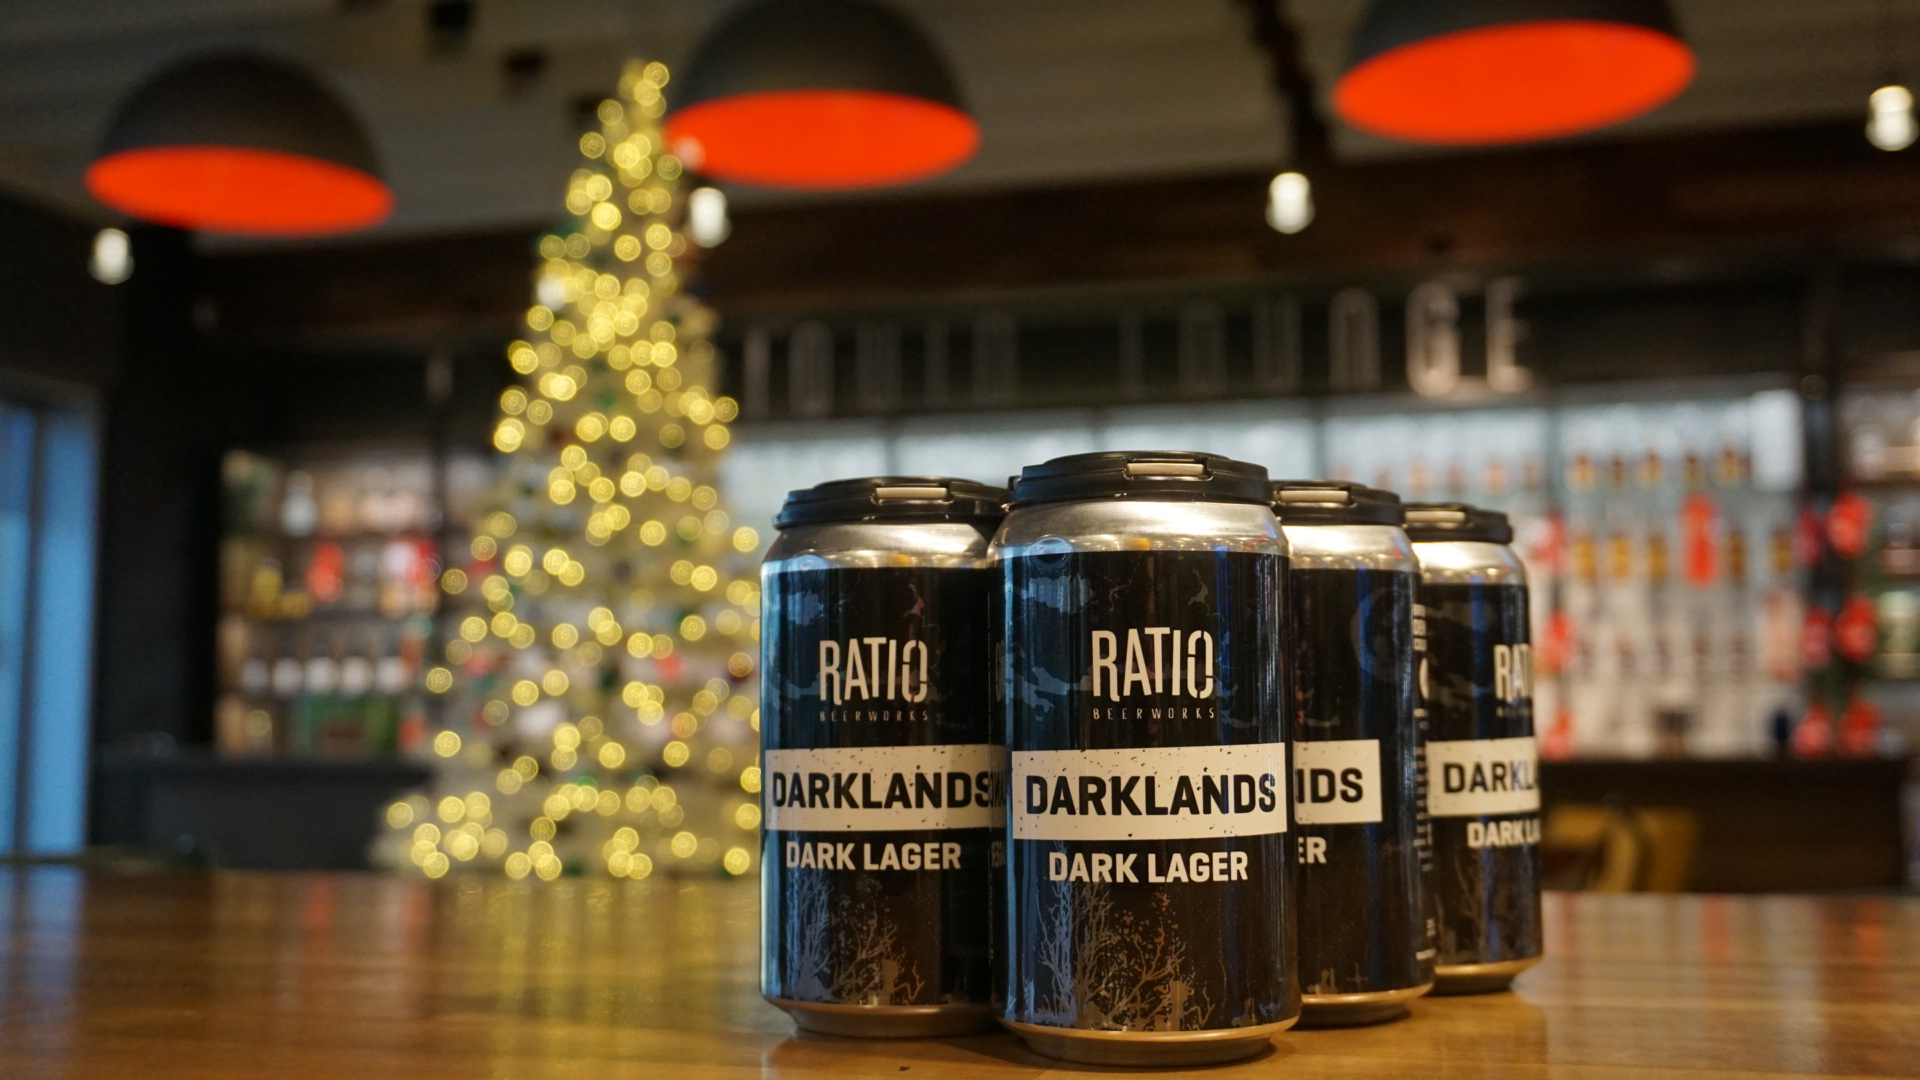 Ratio Beerworks Darklands